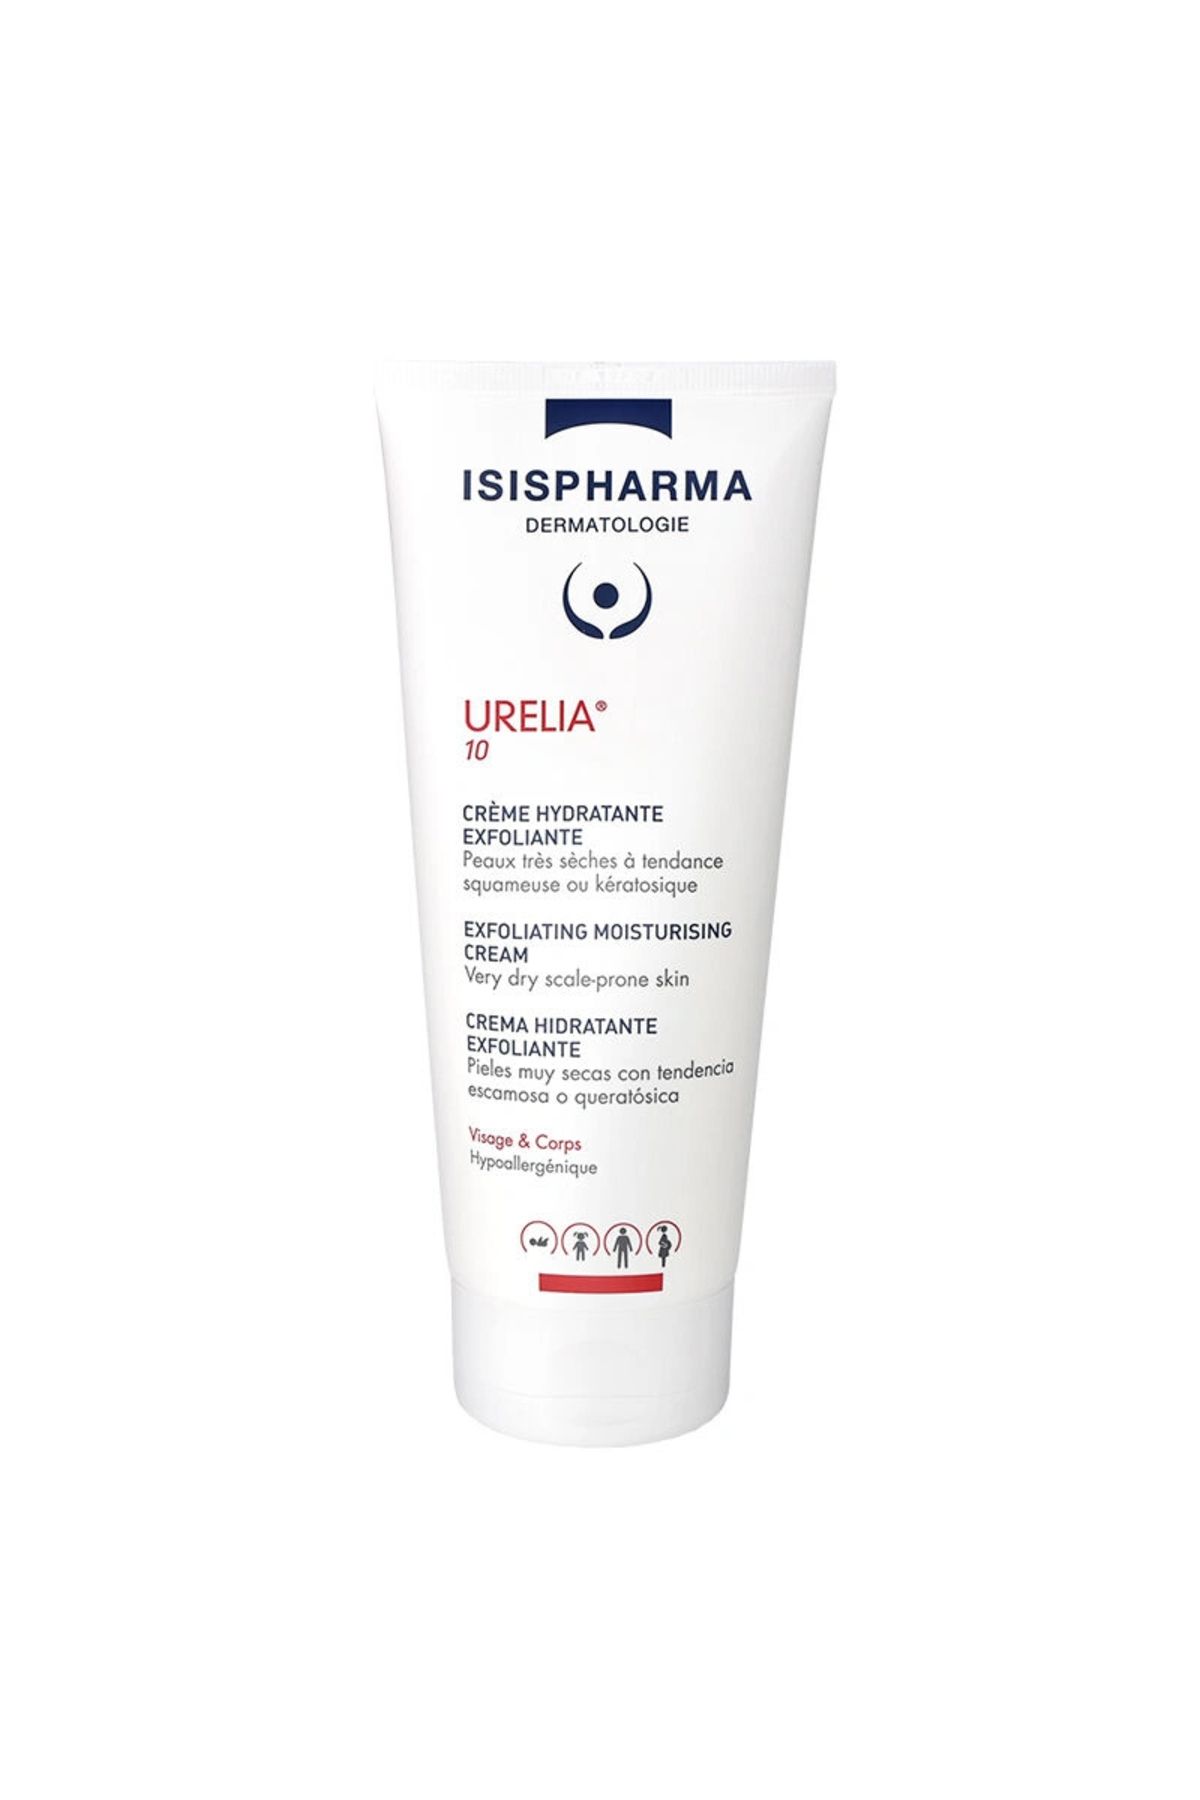 ISIS PHARMA Isis Pharma Urelia 10 Exfoliating Moisturizing Cream - Nemlendirici Krem 150ml